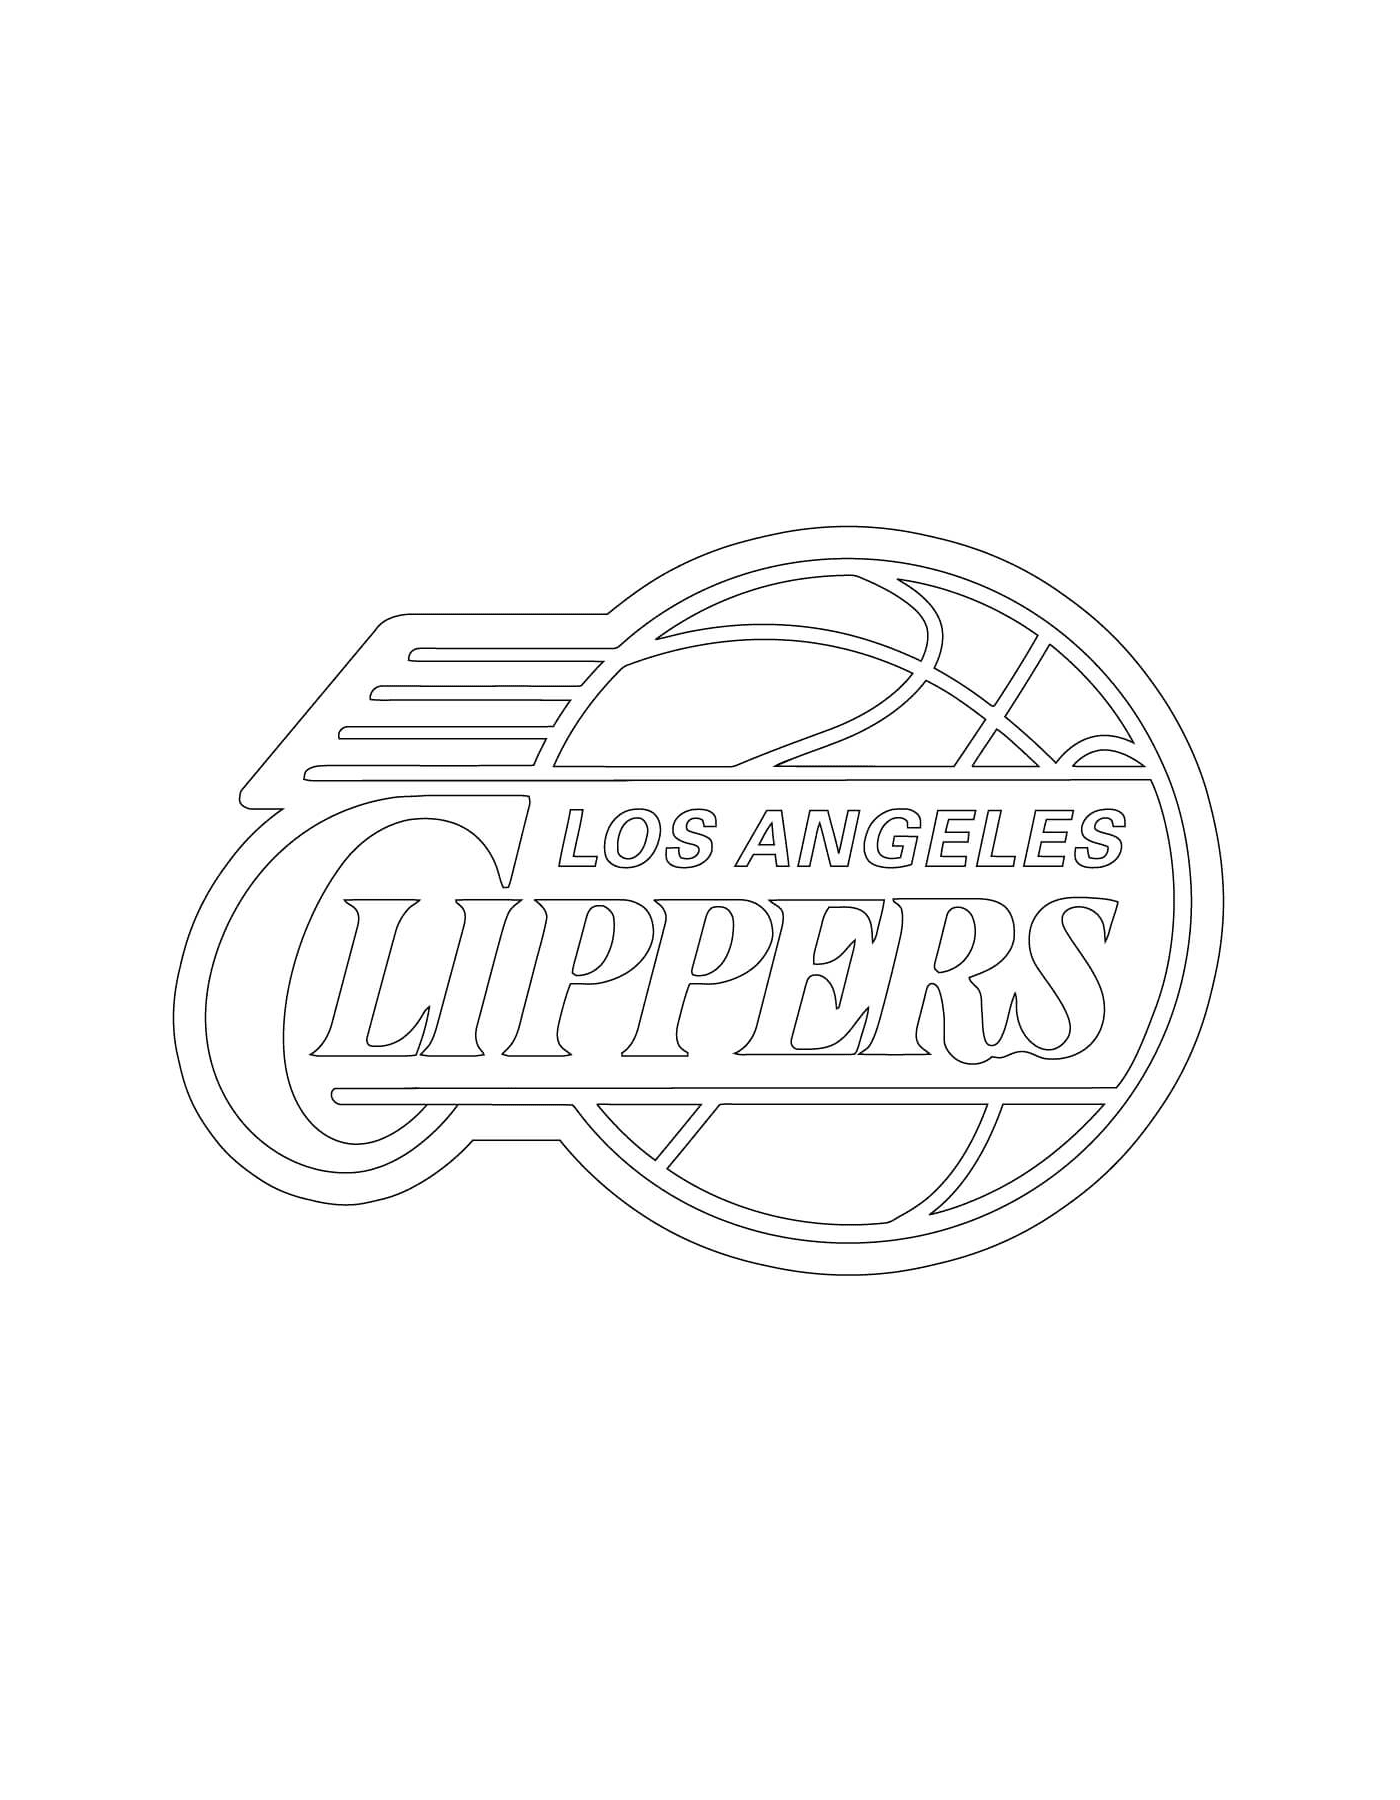  El logo de Los Angeles Clippers de la NBA 